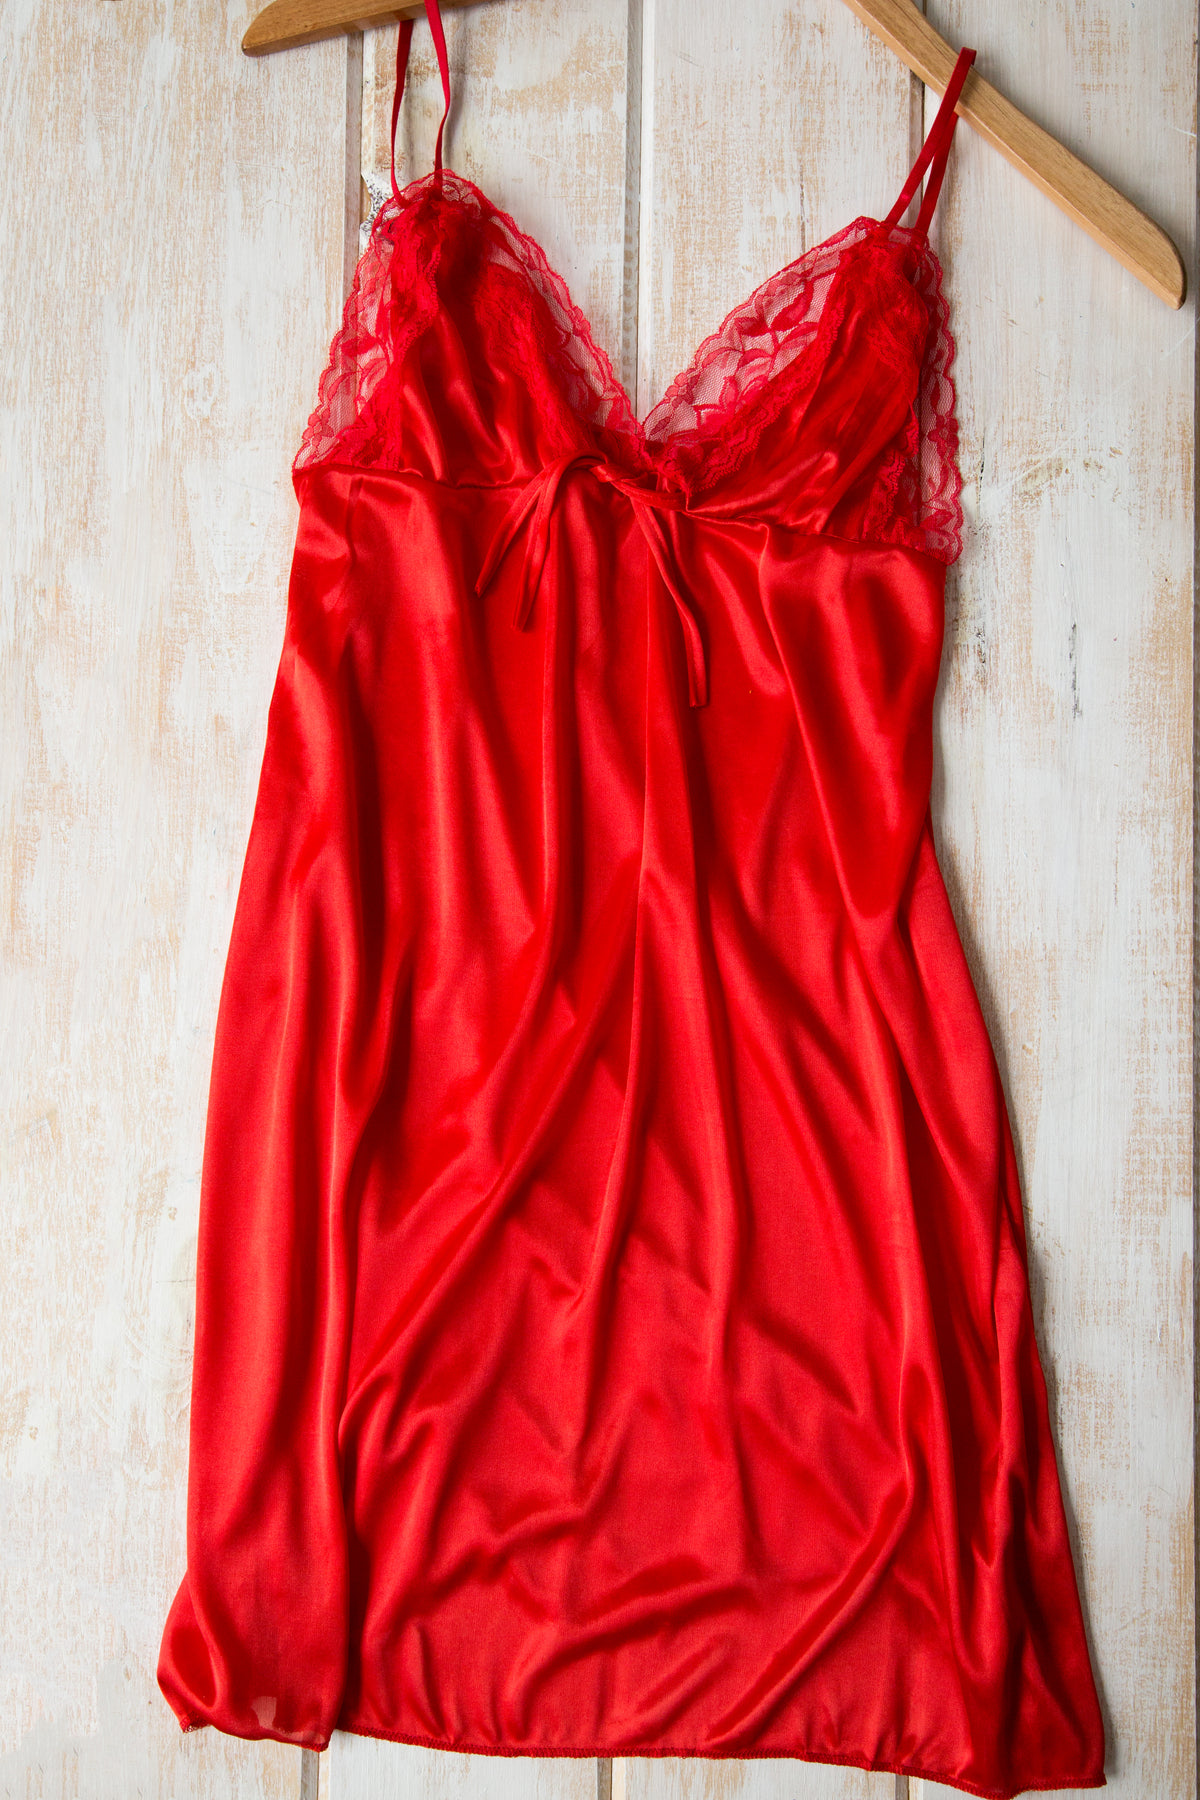 丝质红裙